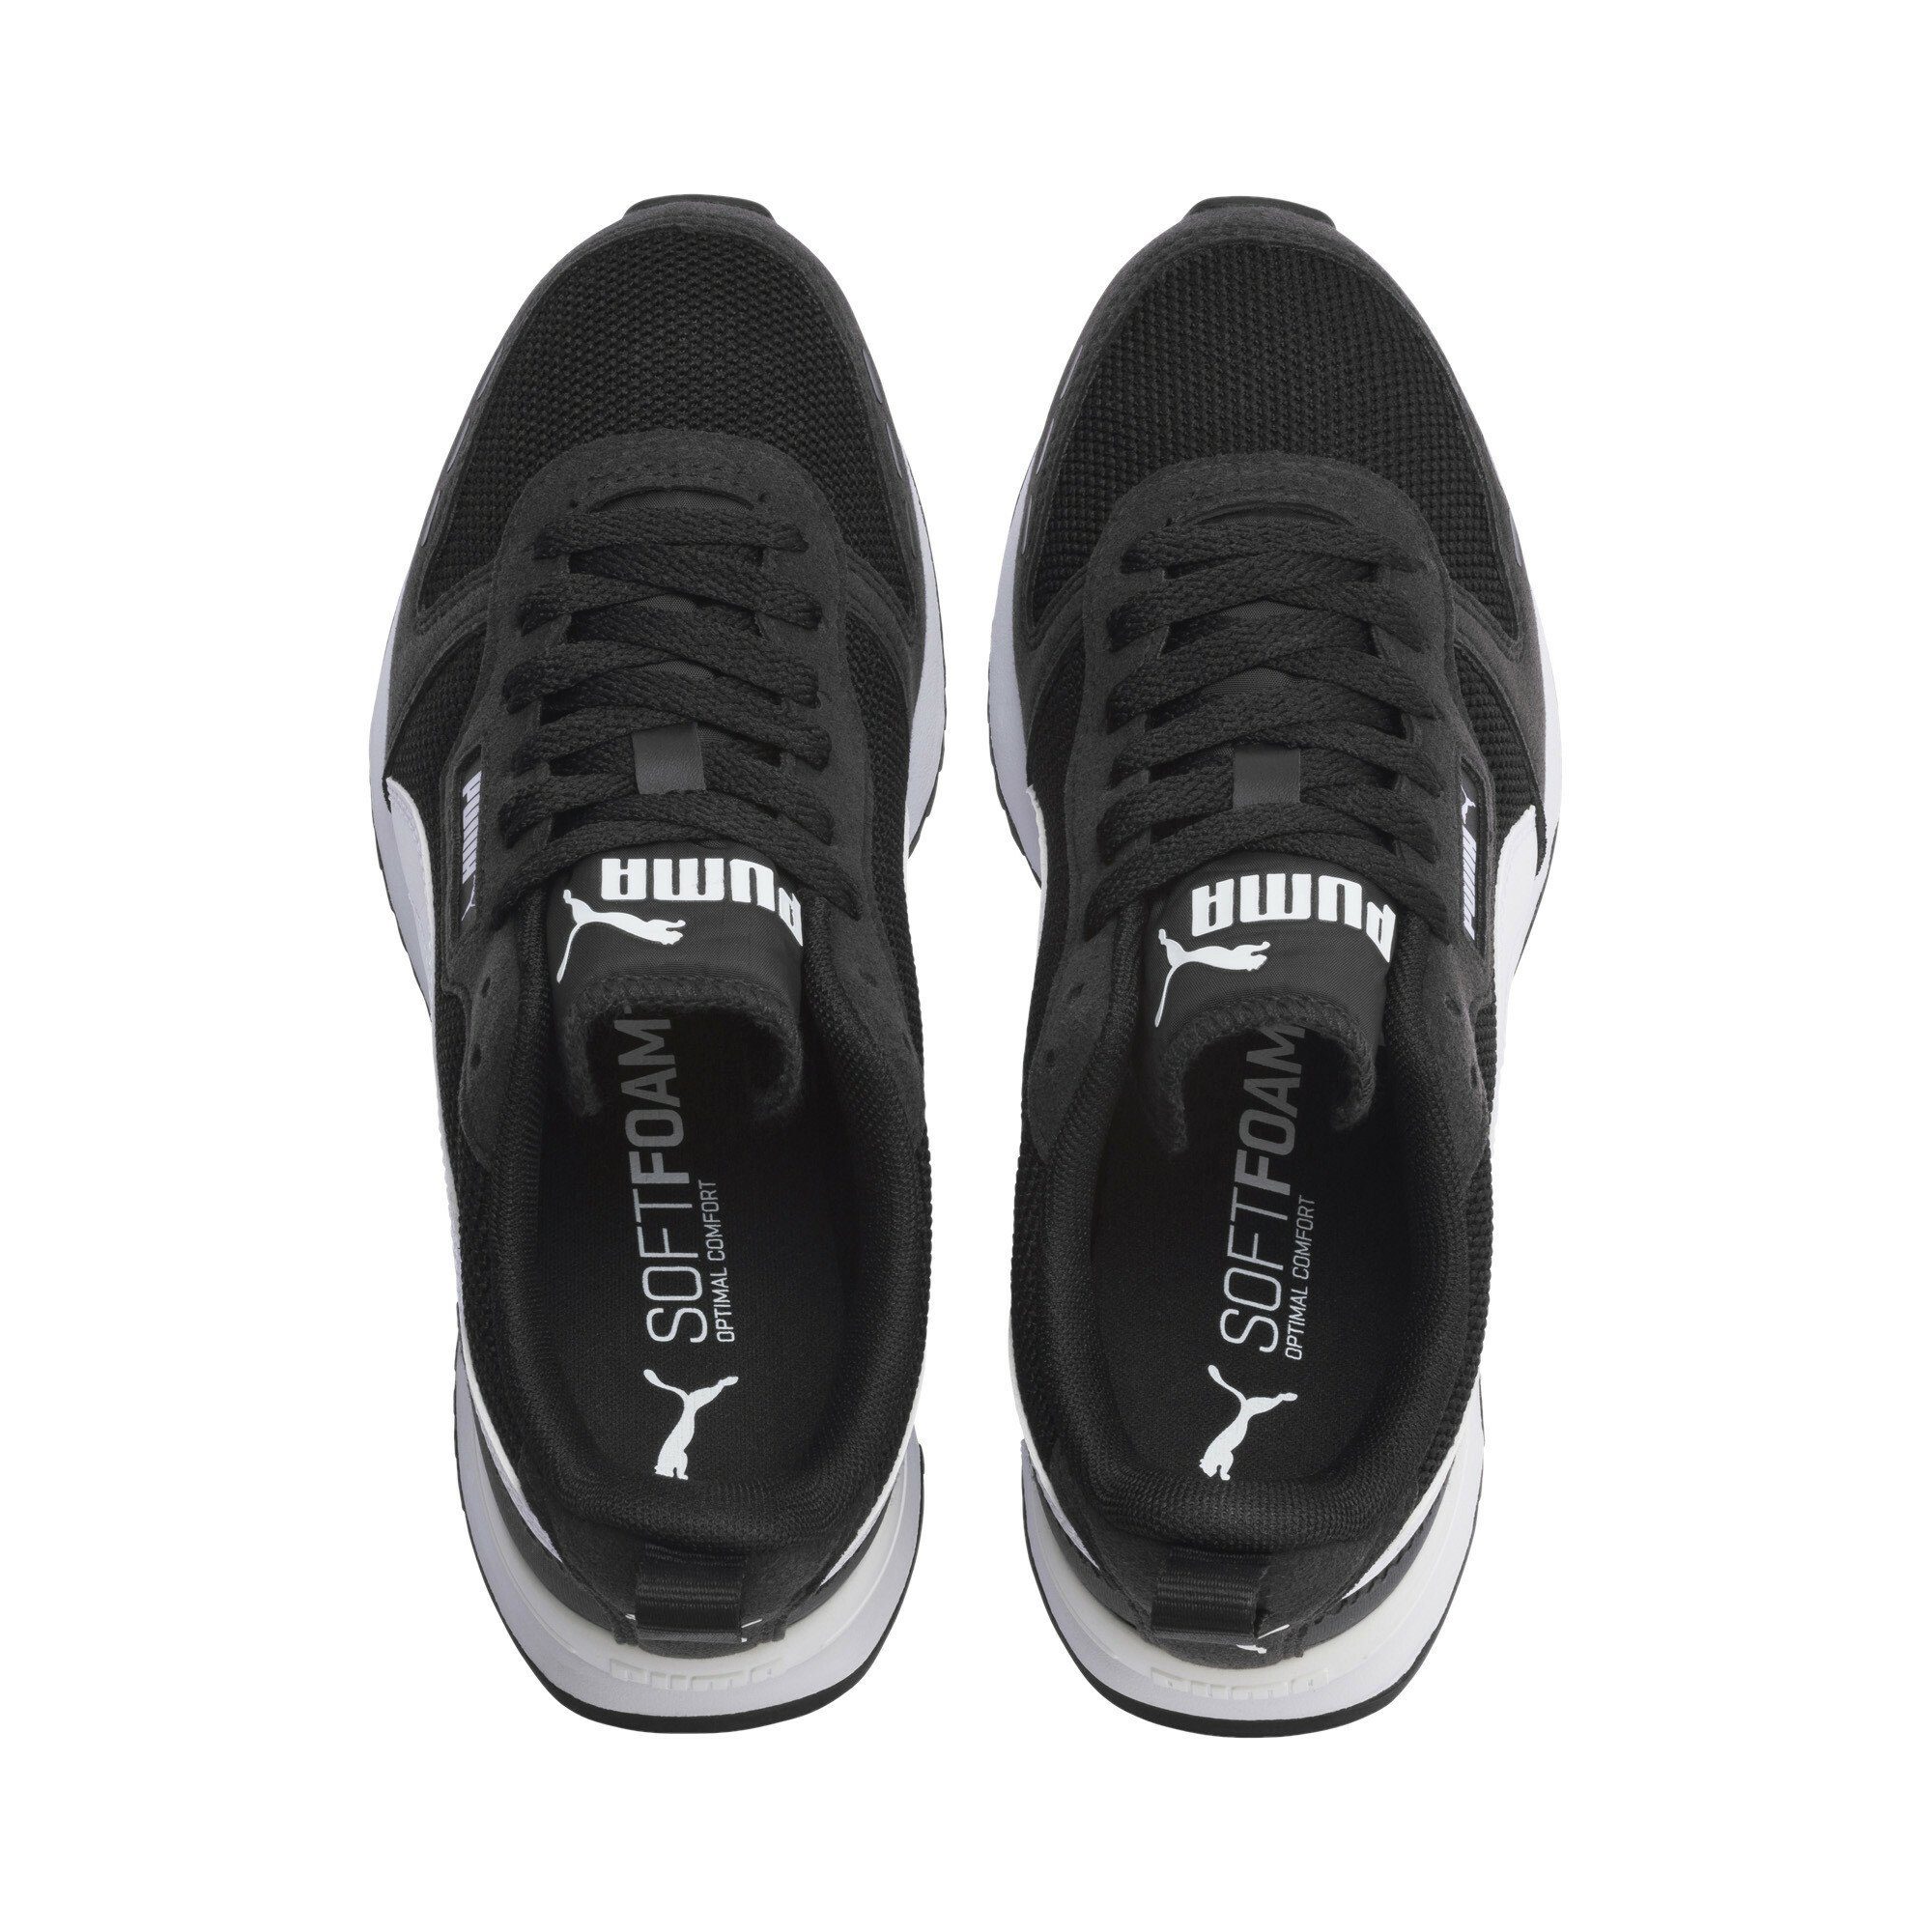 White Sneakers Black Laufschuh Jugendliche PUMA R78